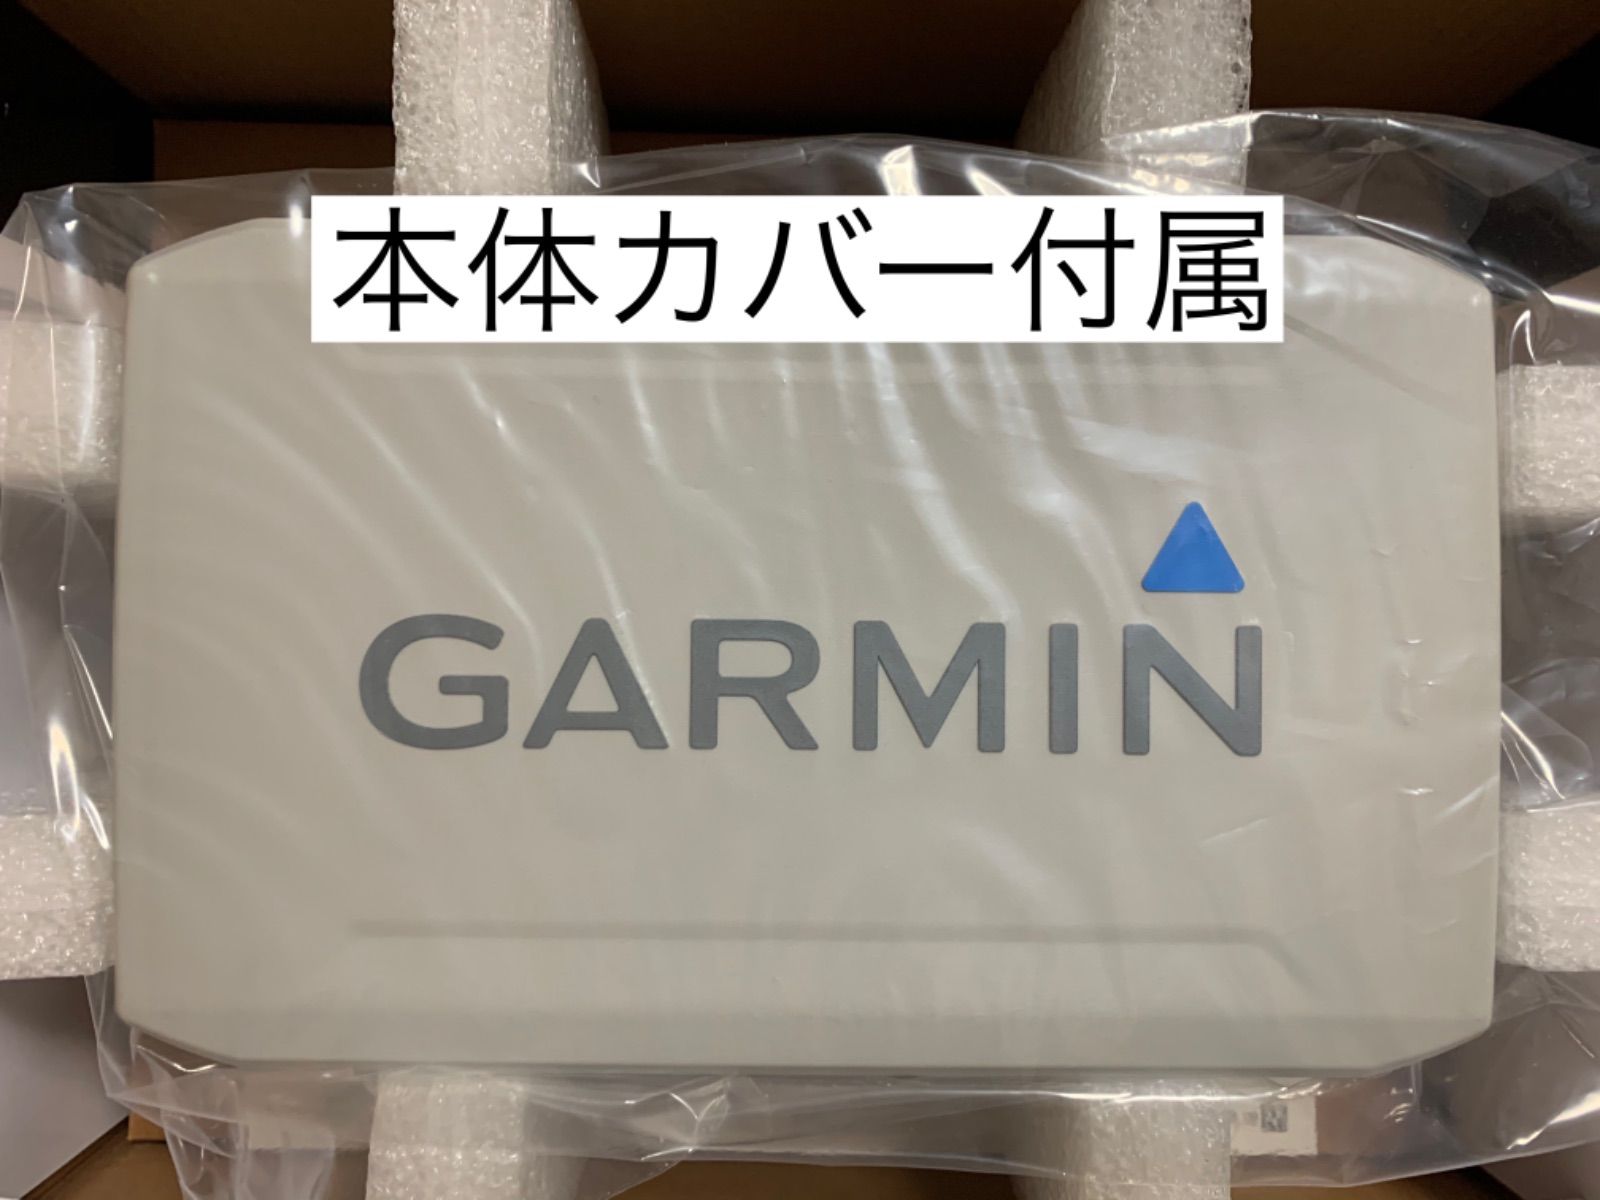 ガーミン エコマップUHD7インチ+GT51M振動子、マップ 日本語表示可能 